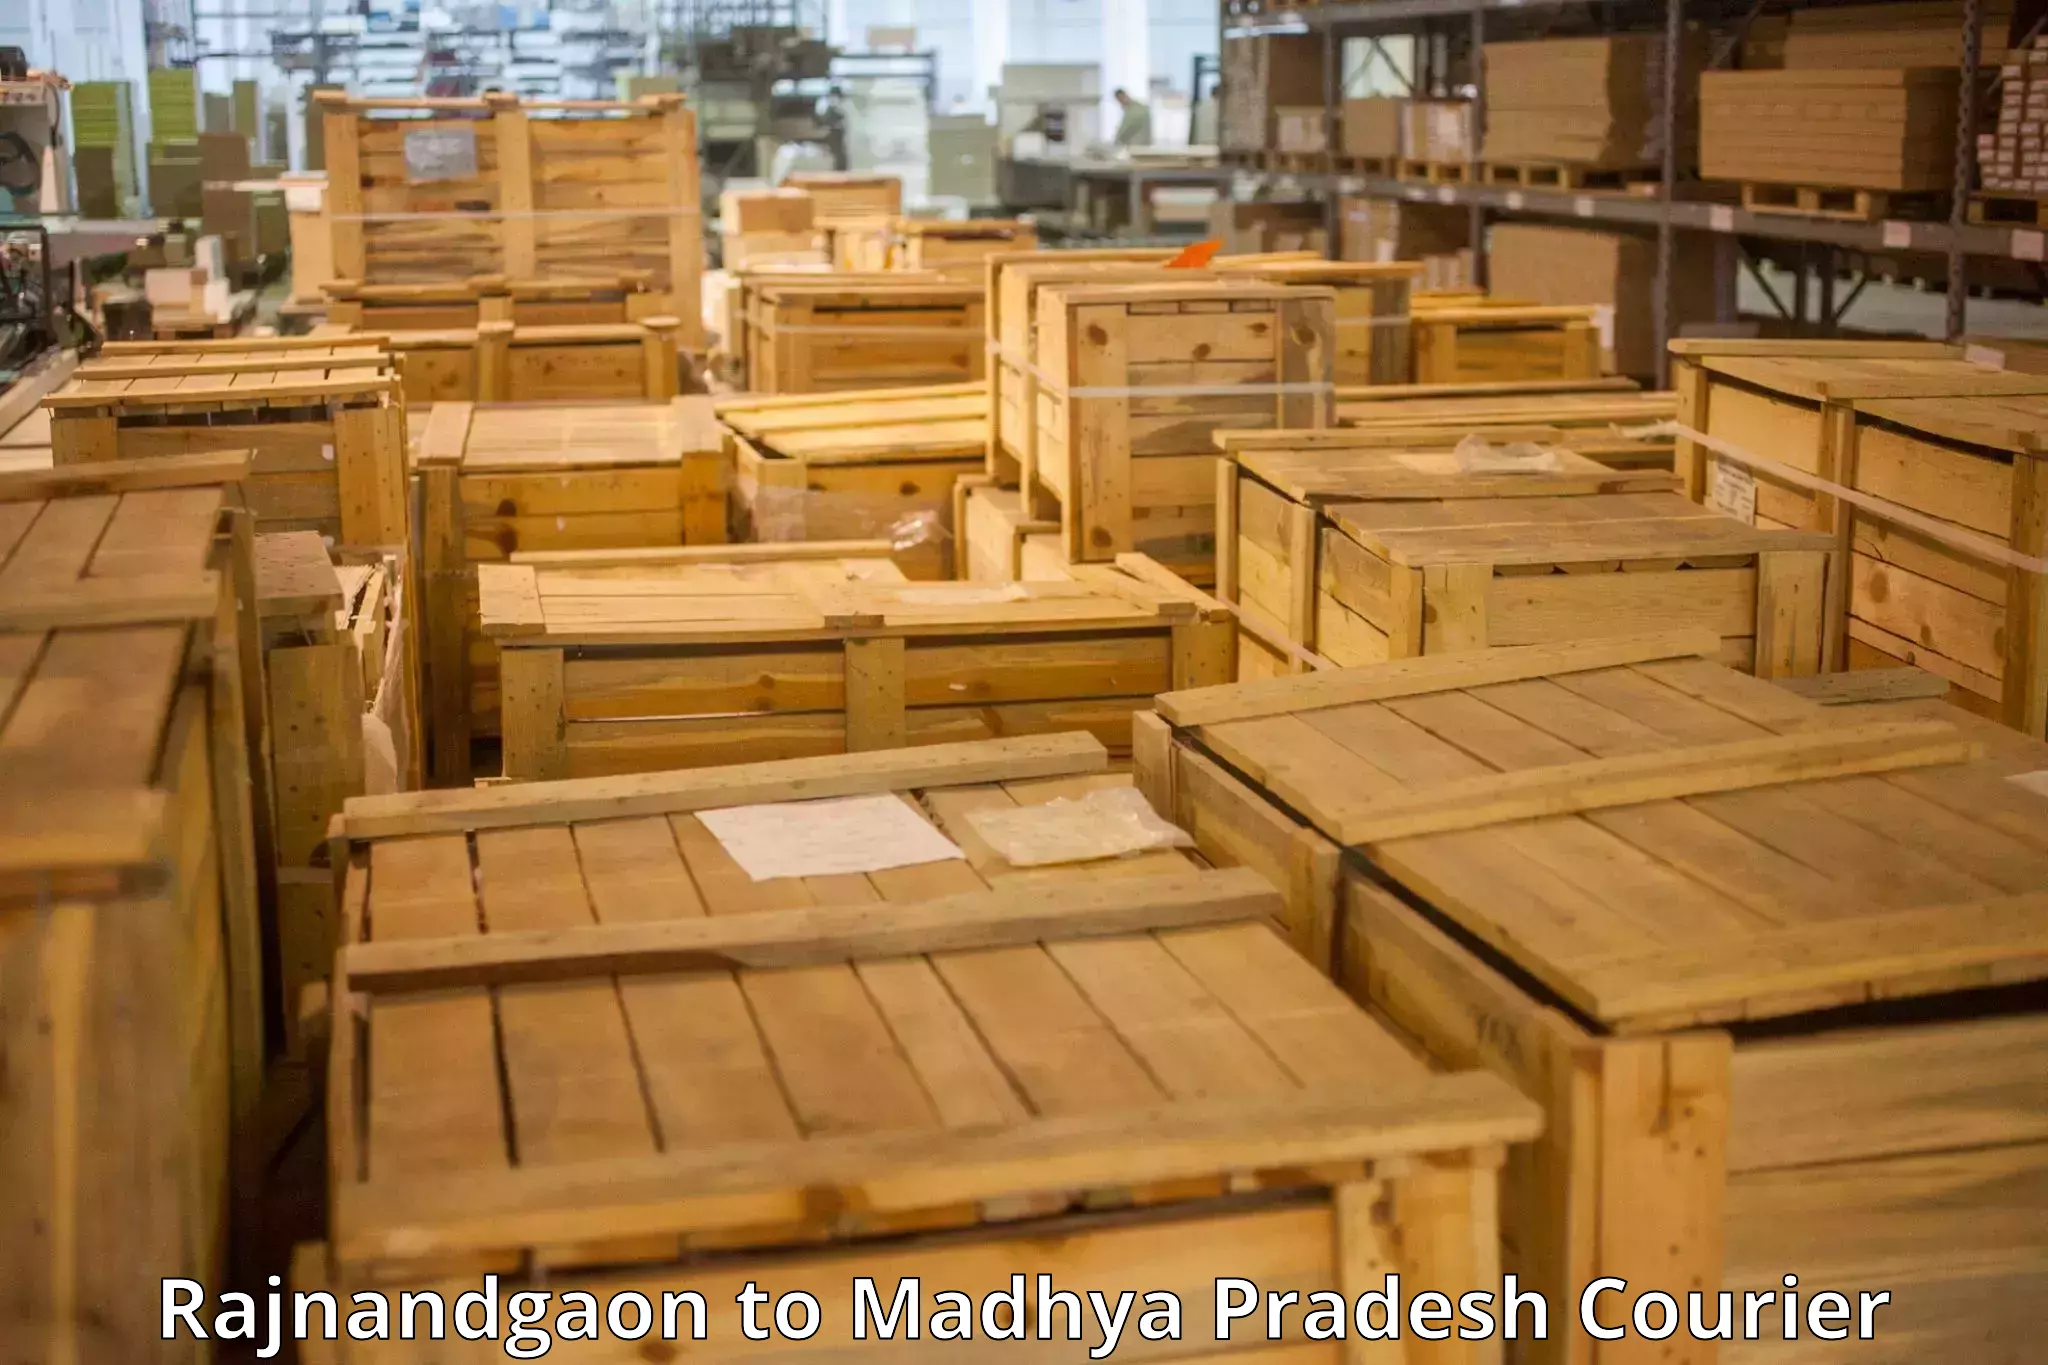 Baggage shipping experts Rajnandgaon to Binaganj